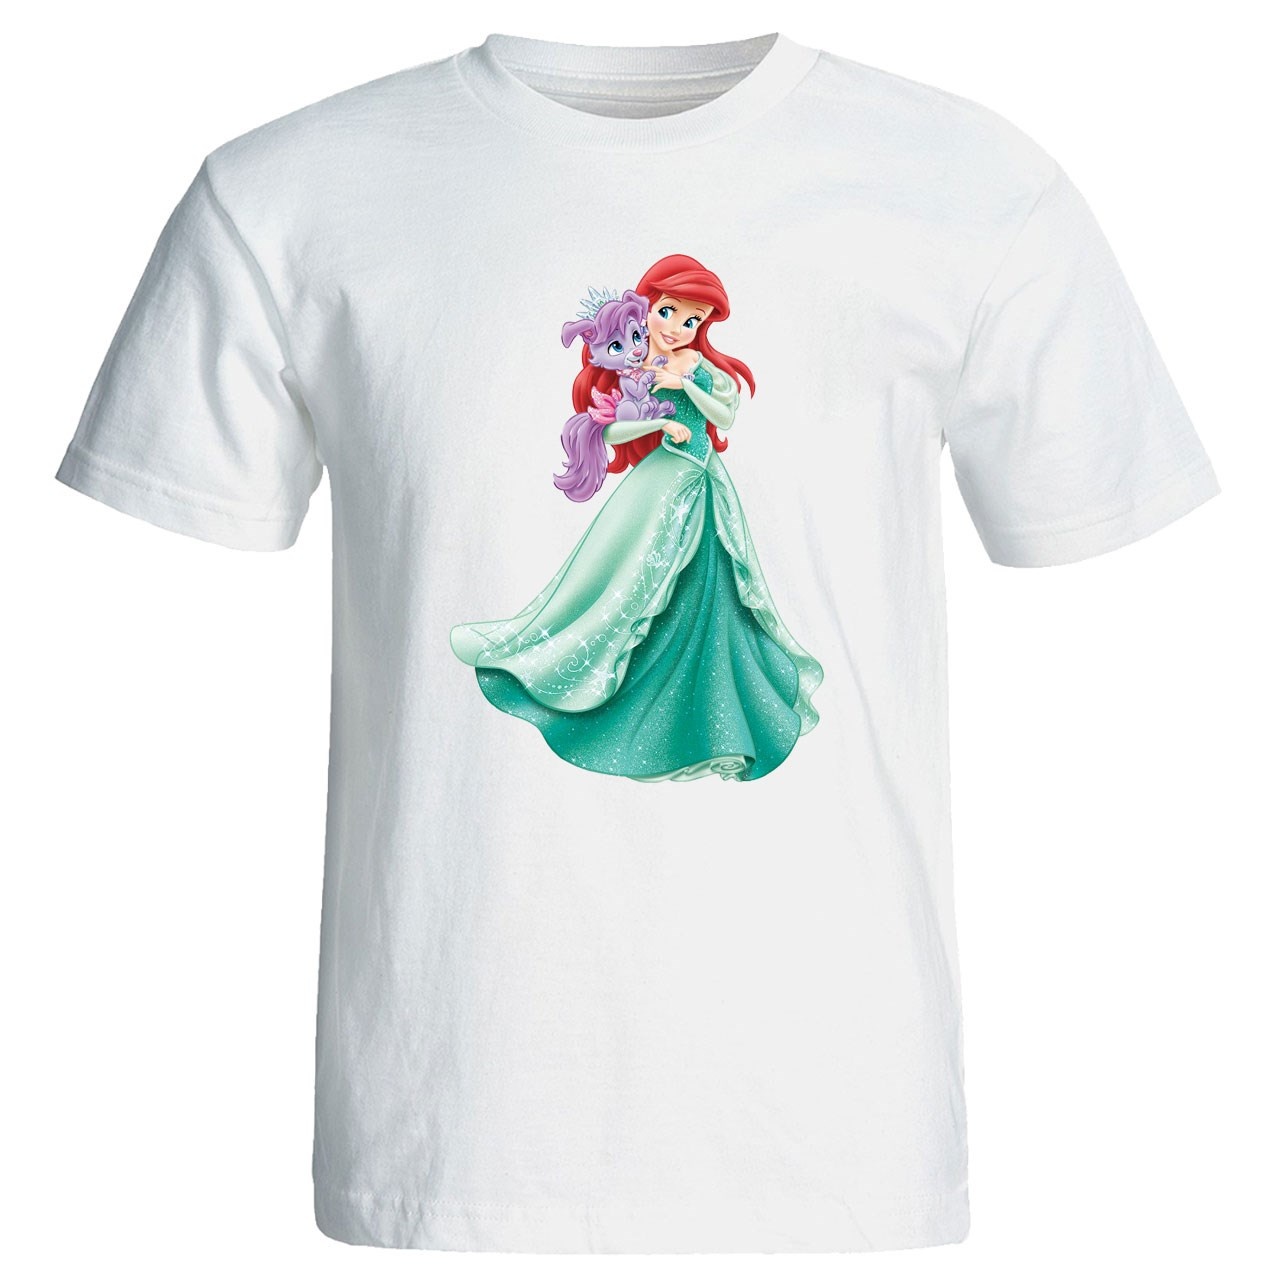 تی شرت زنانه پارس طرح کارتونی پرنسس یاسمن کد 3643